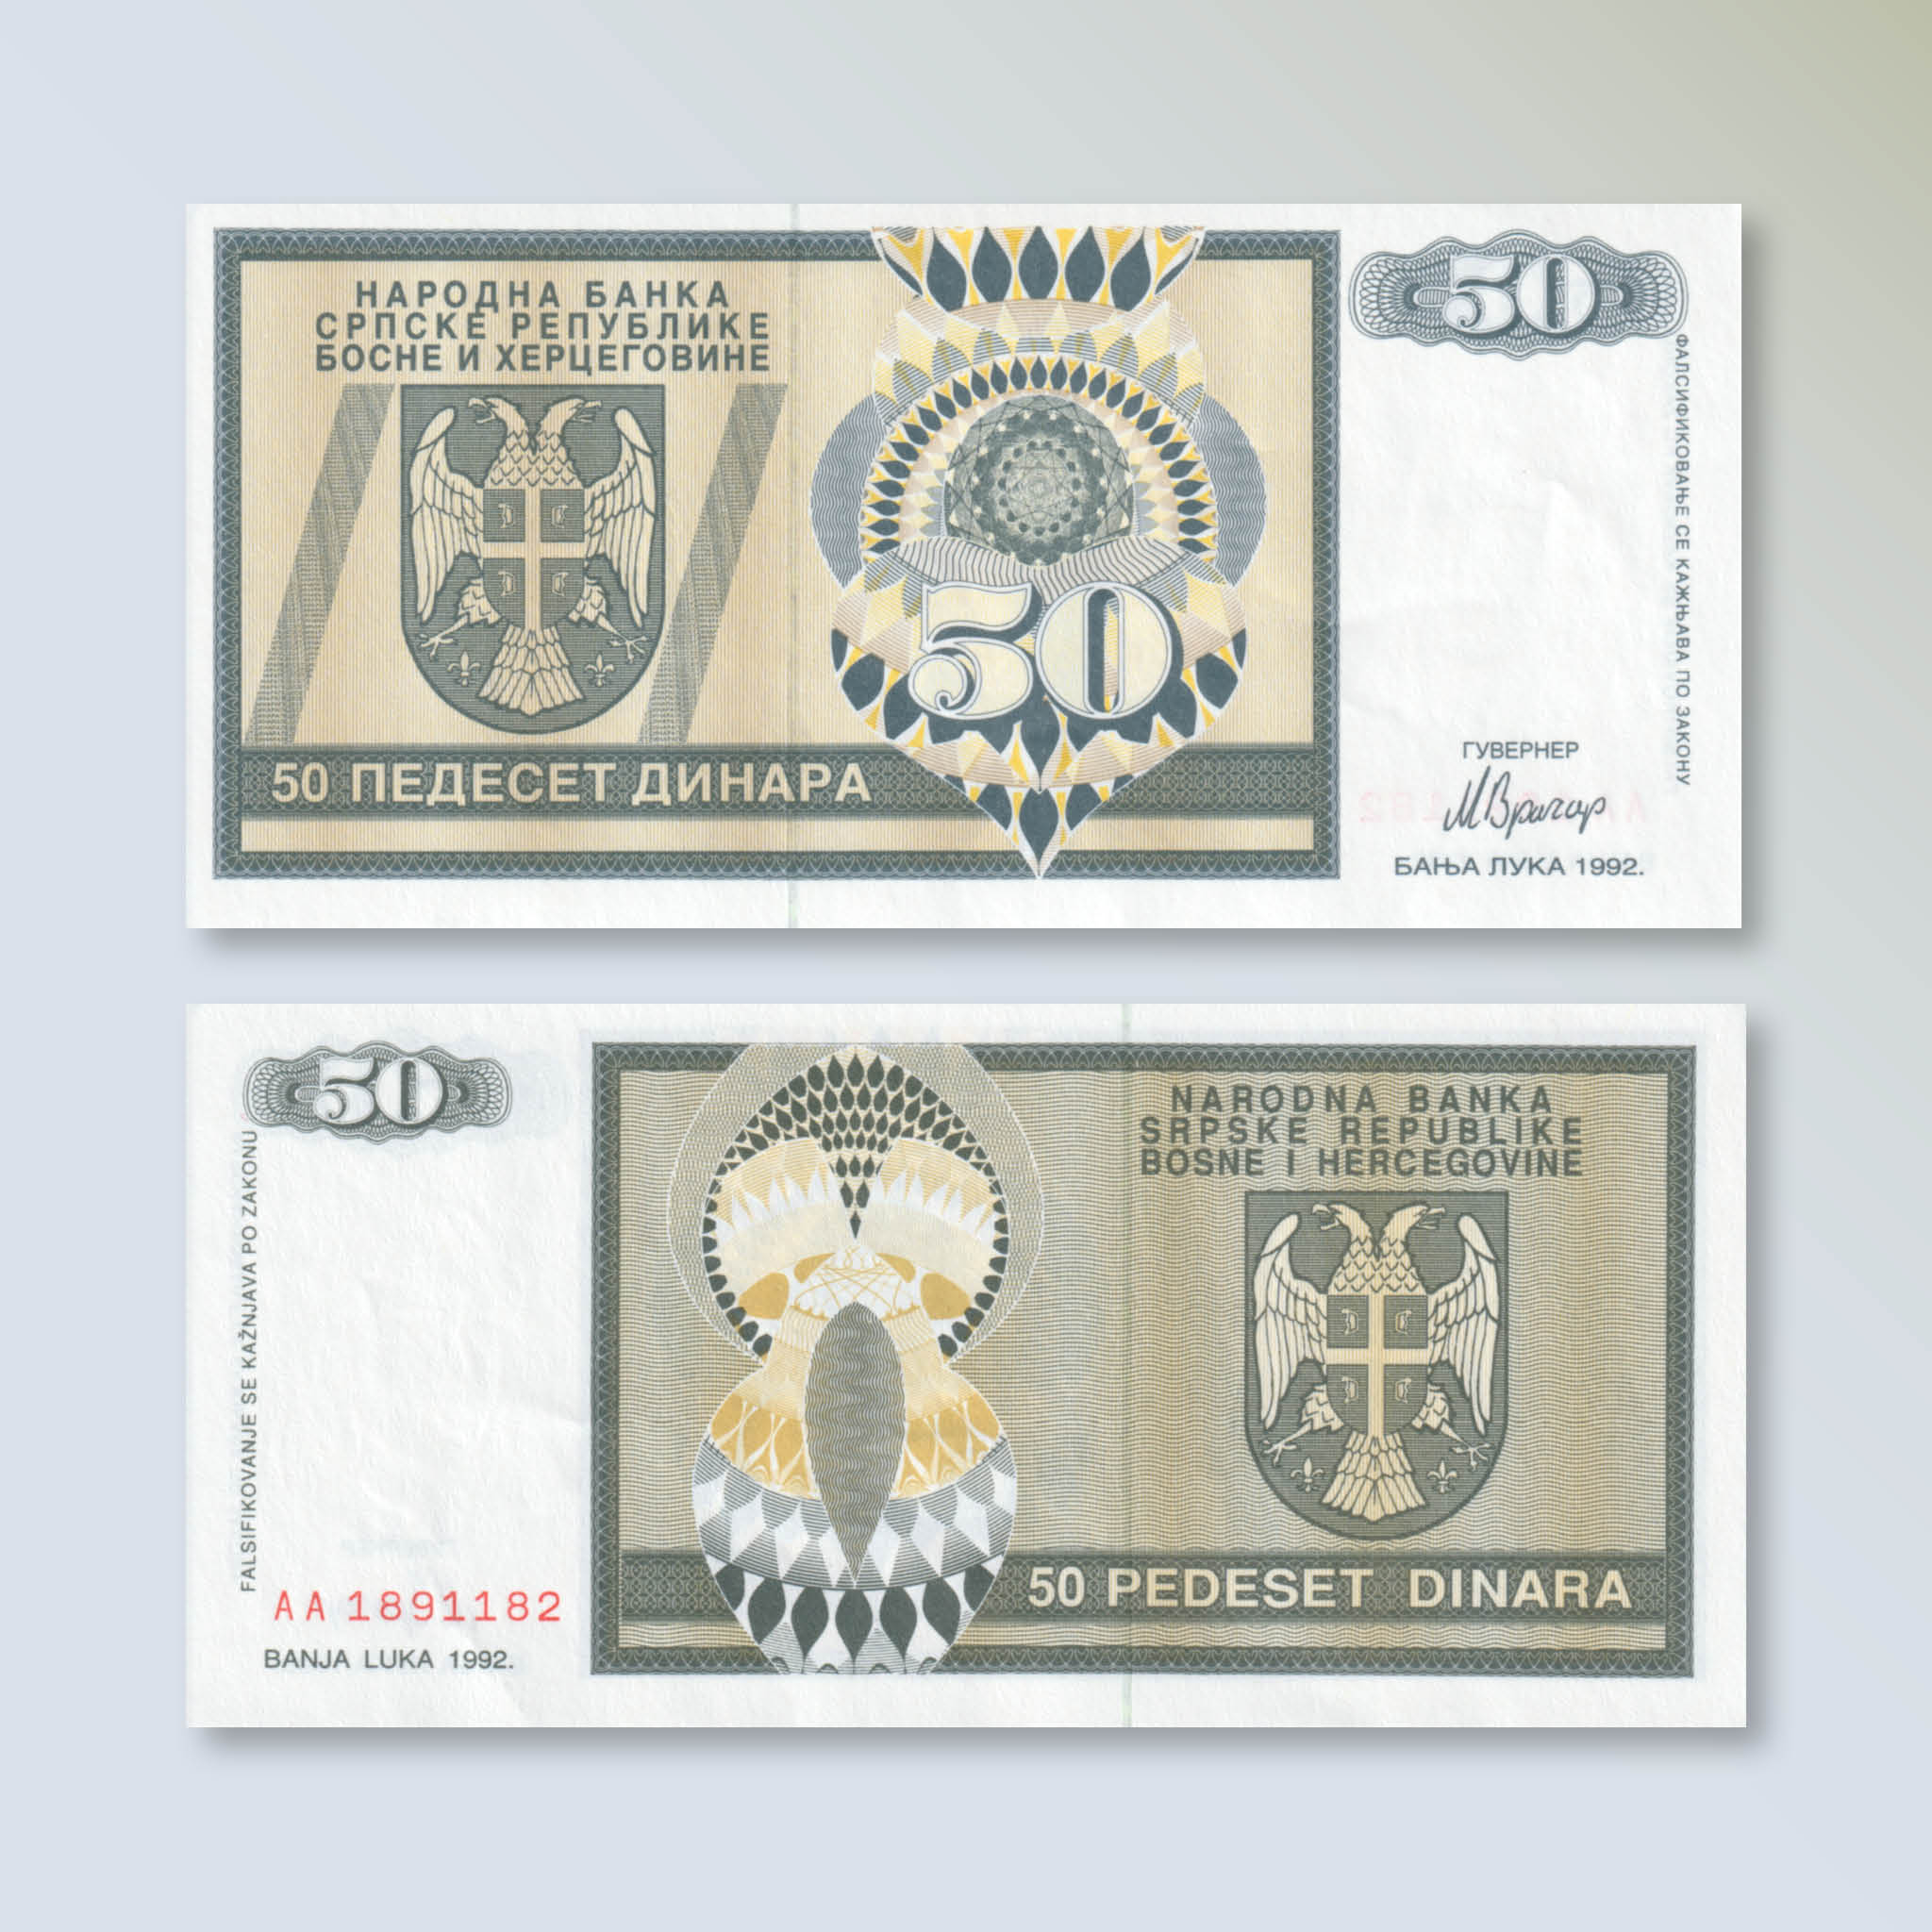 Republika Srpska 50 Dinars, 1992, B102a, P134a, UNC - Robert's World Money - World Banknotes